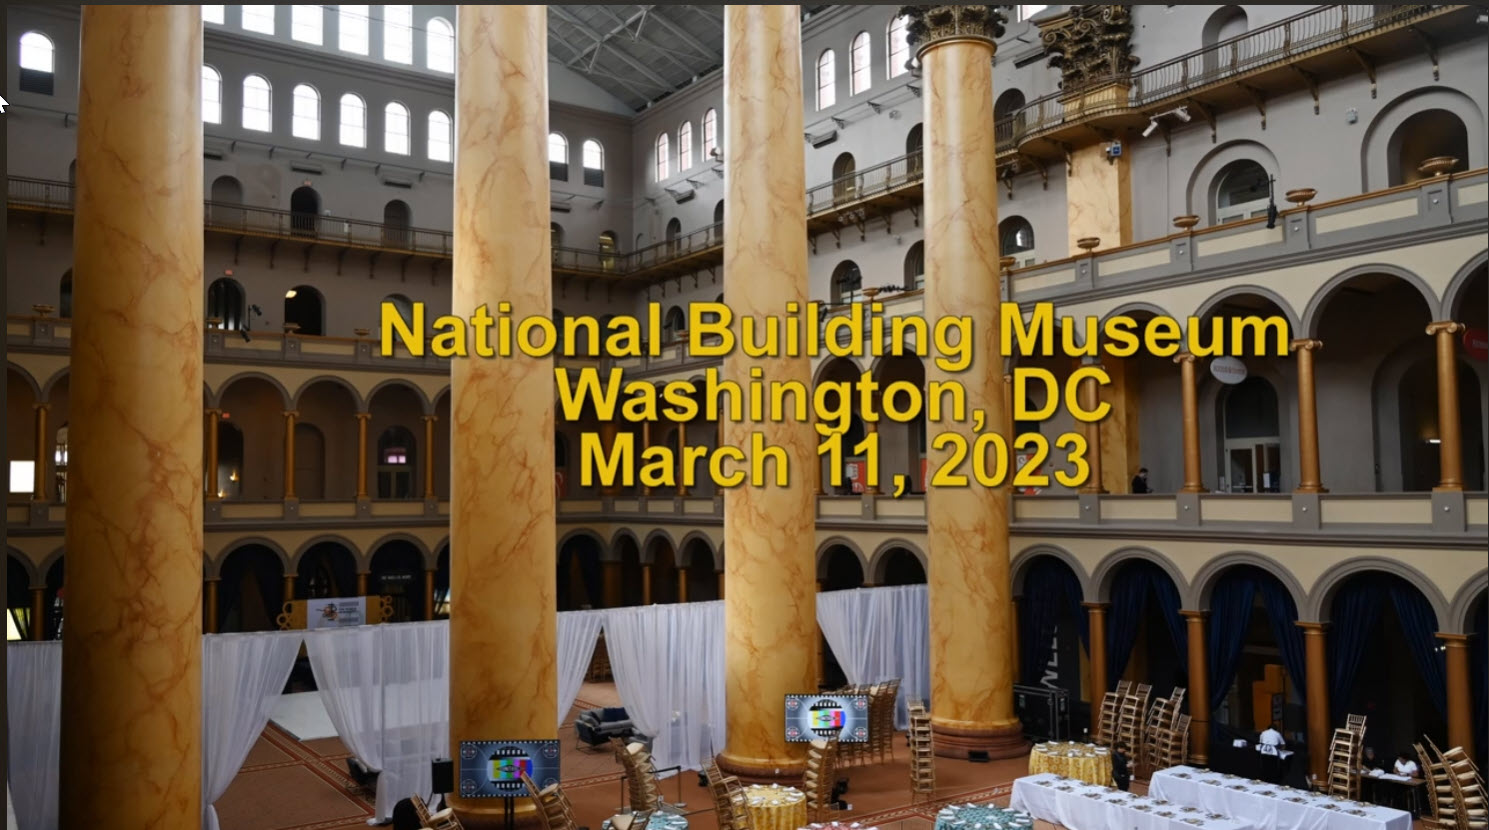 National Building Museum Field Trip Video by Ed Niehenke